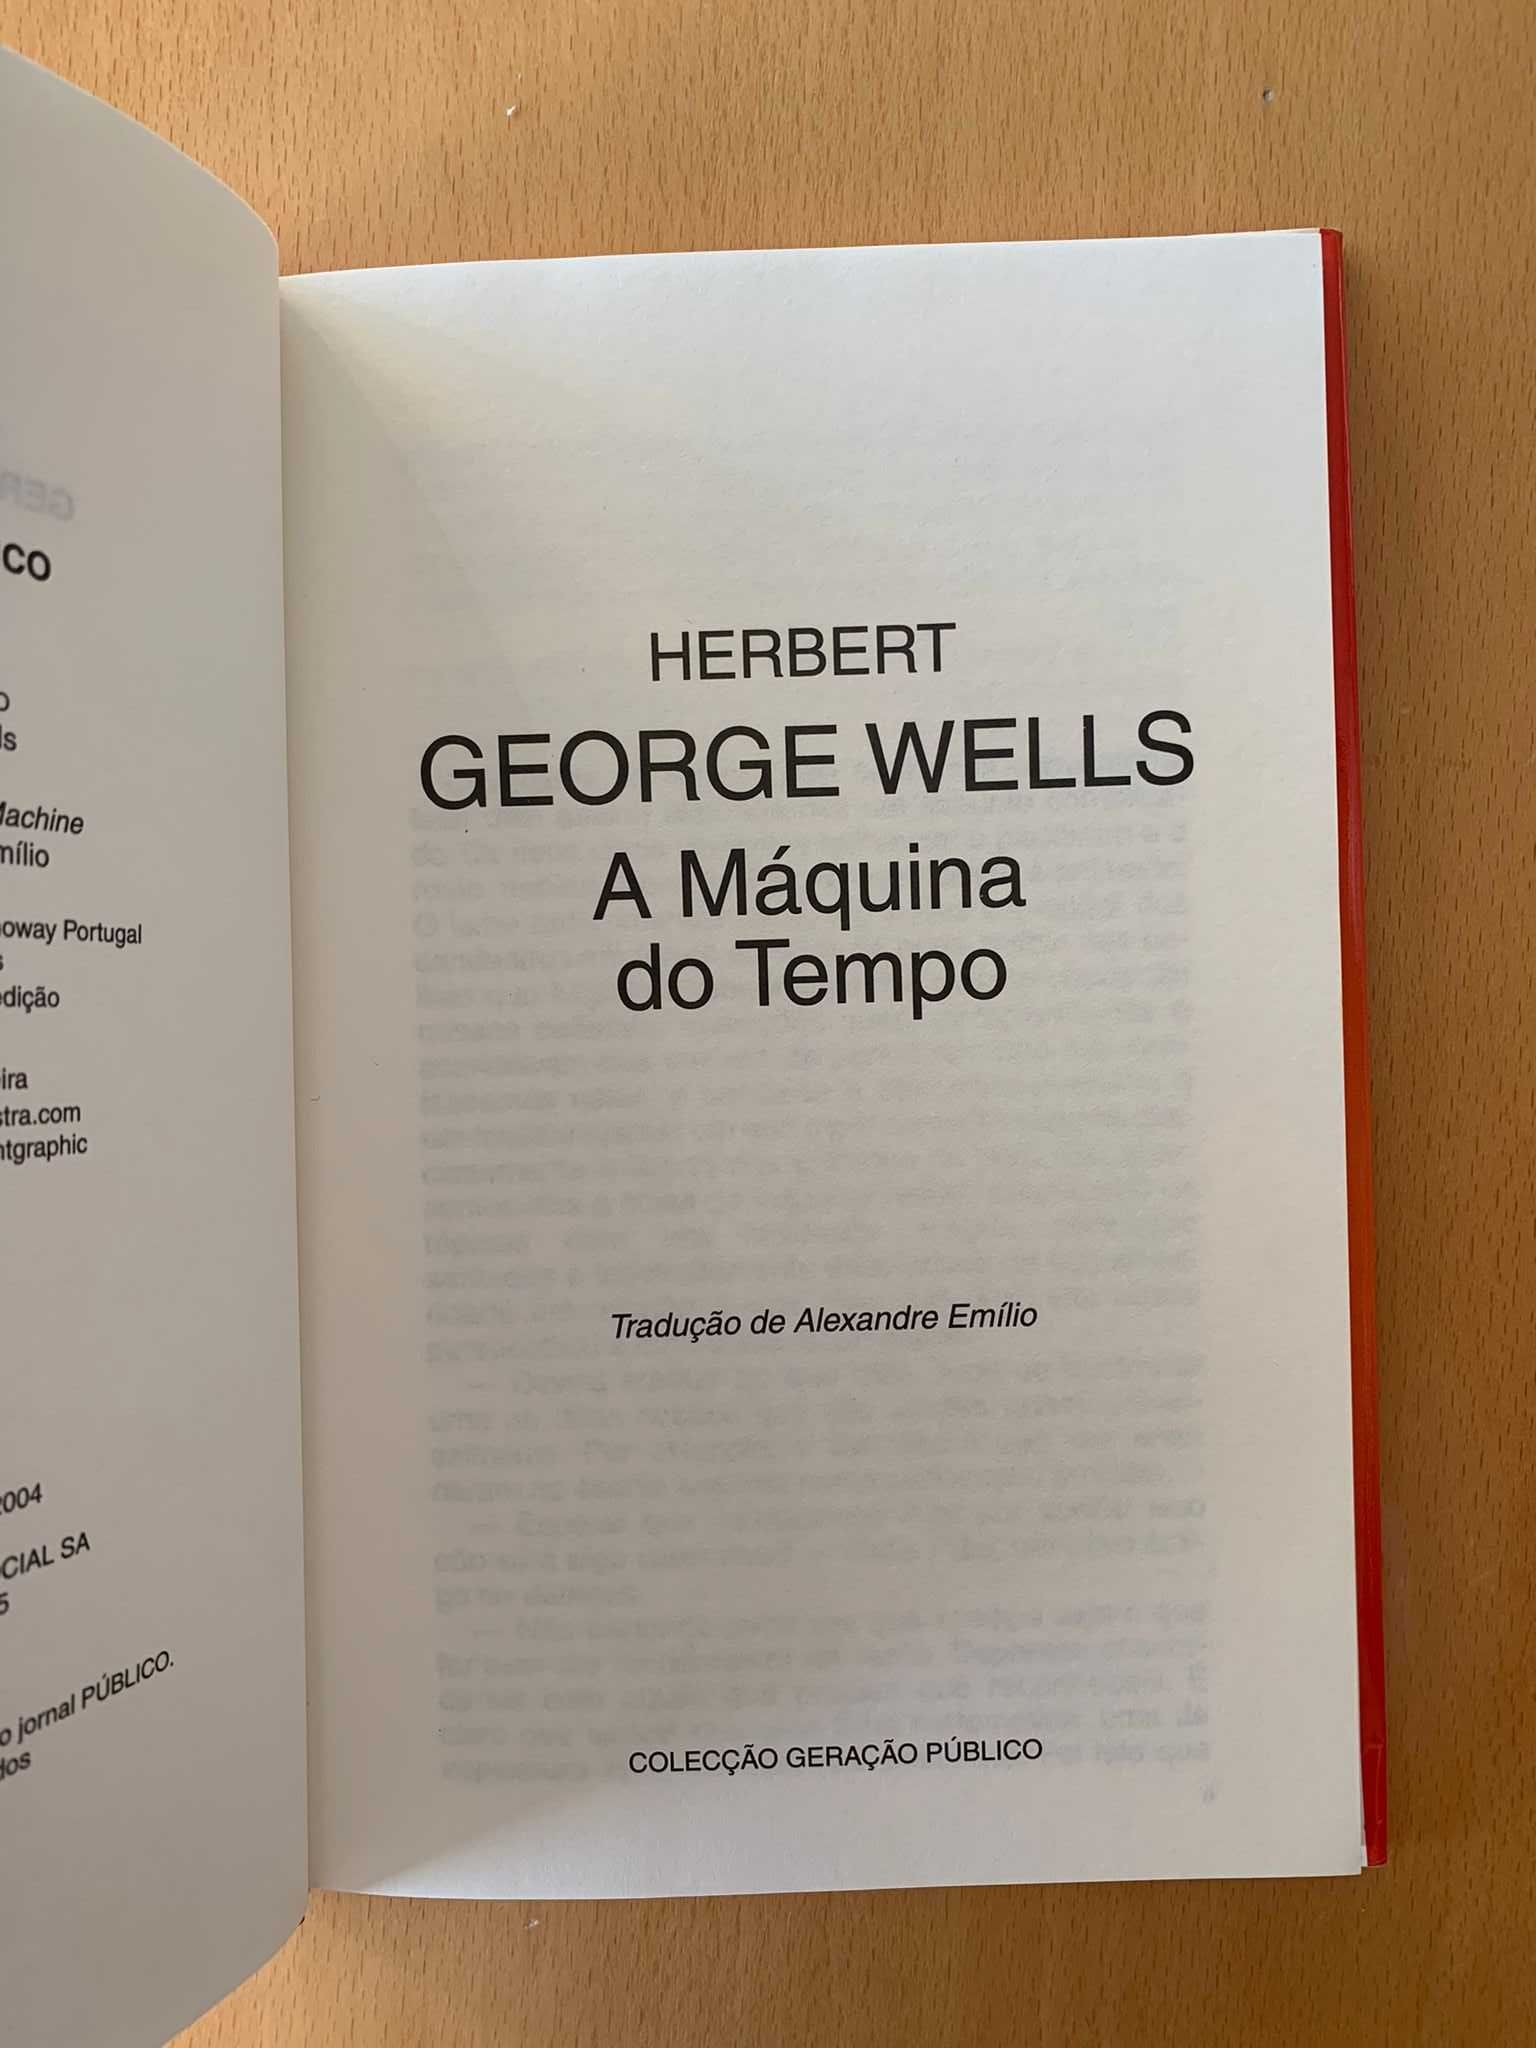 A Máquina do Tempo - H. G. Wells